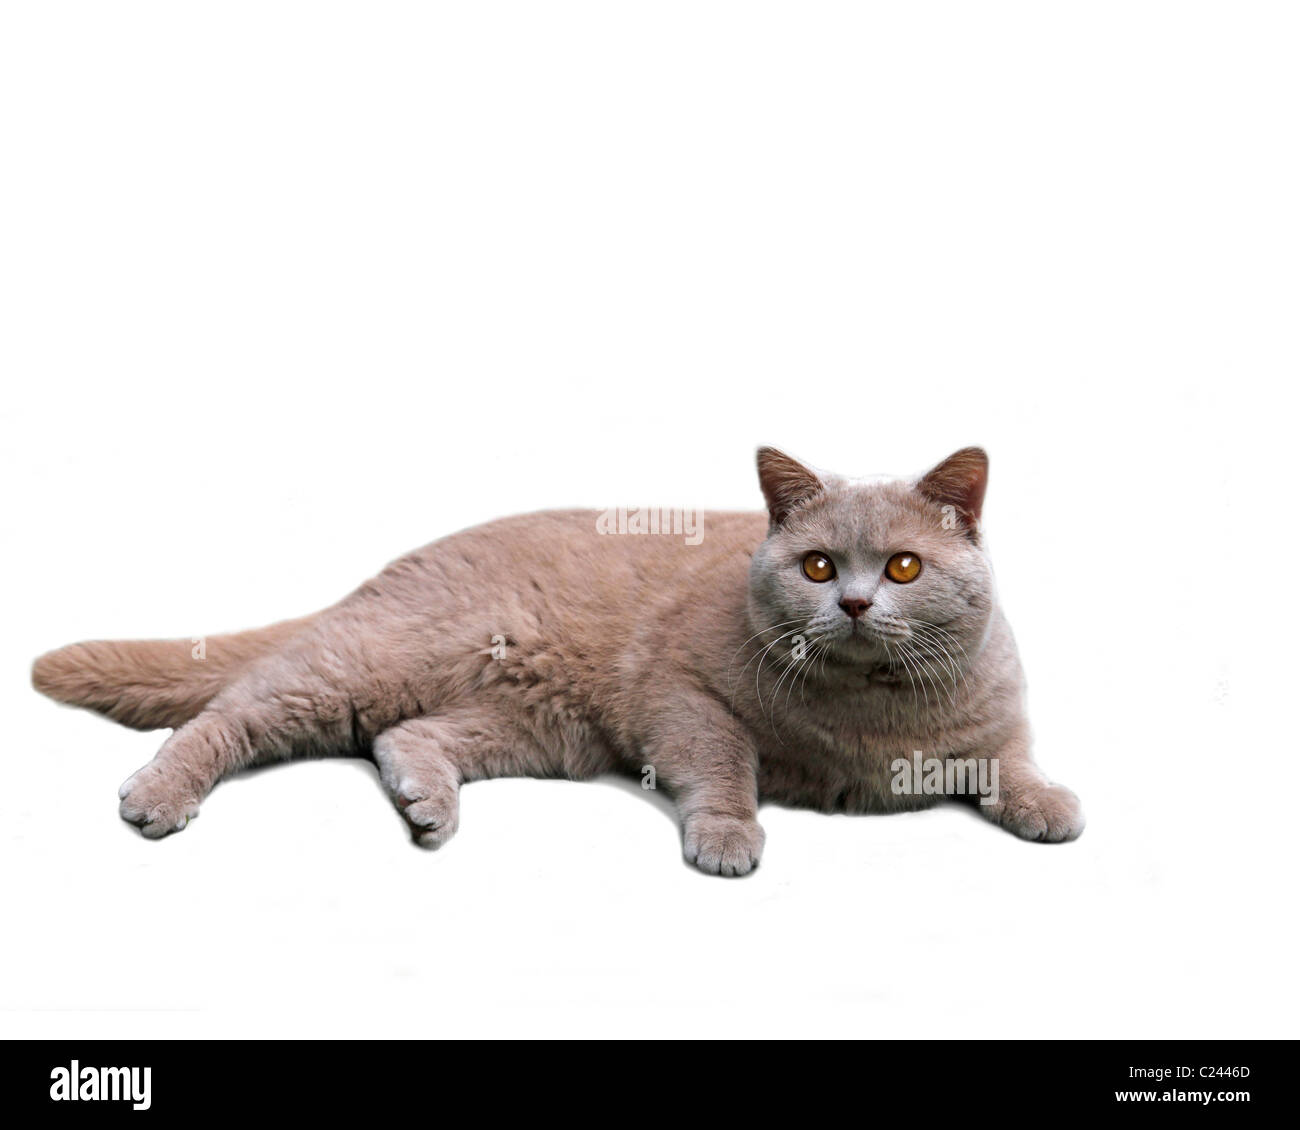 British Shorthair gatto su sfondo bianco Foto Stock